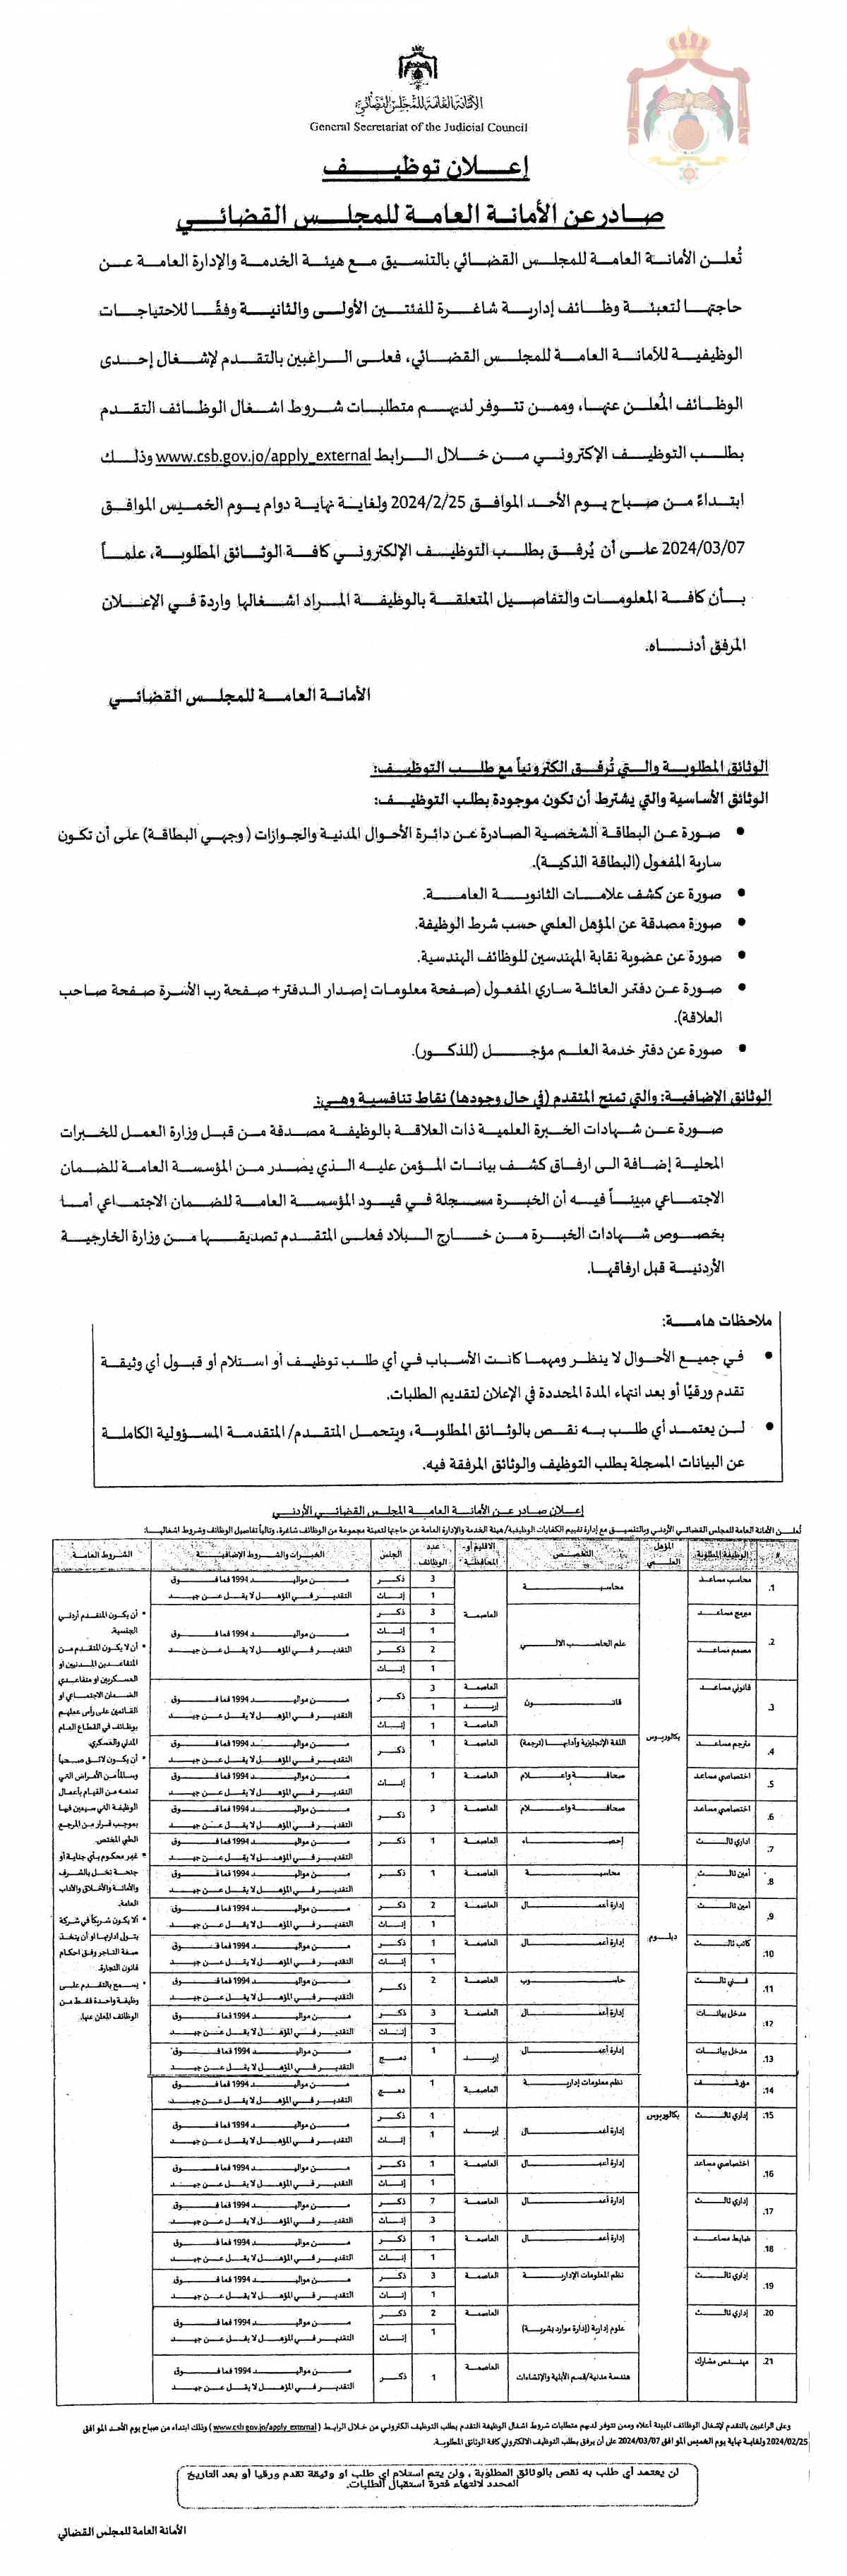 المجلس القضائي الأردني يعلن عن عشرات الوظائف الشاغرة في مختلف التخصصات (تفاصيل)